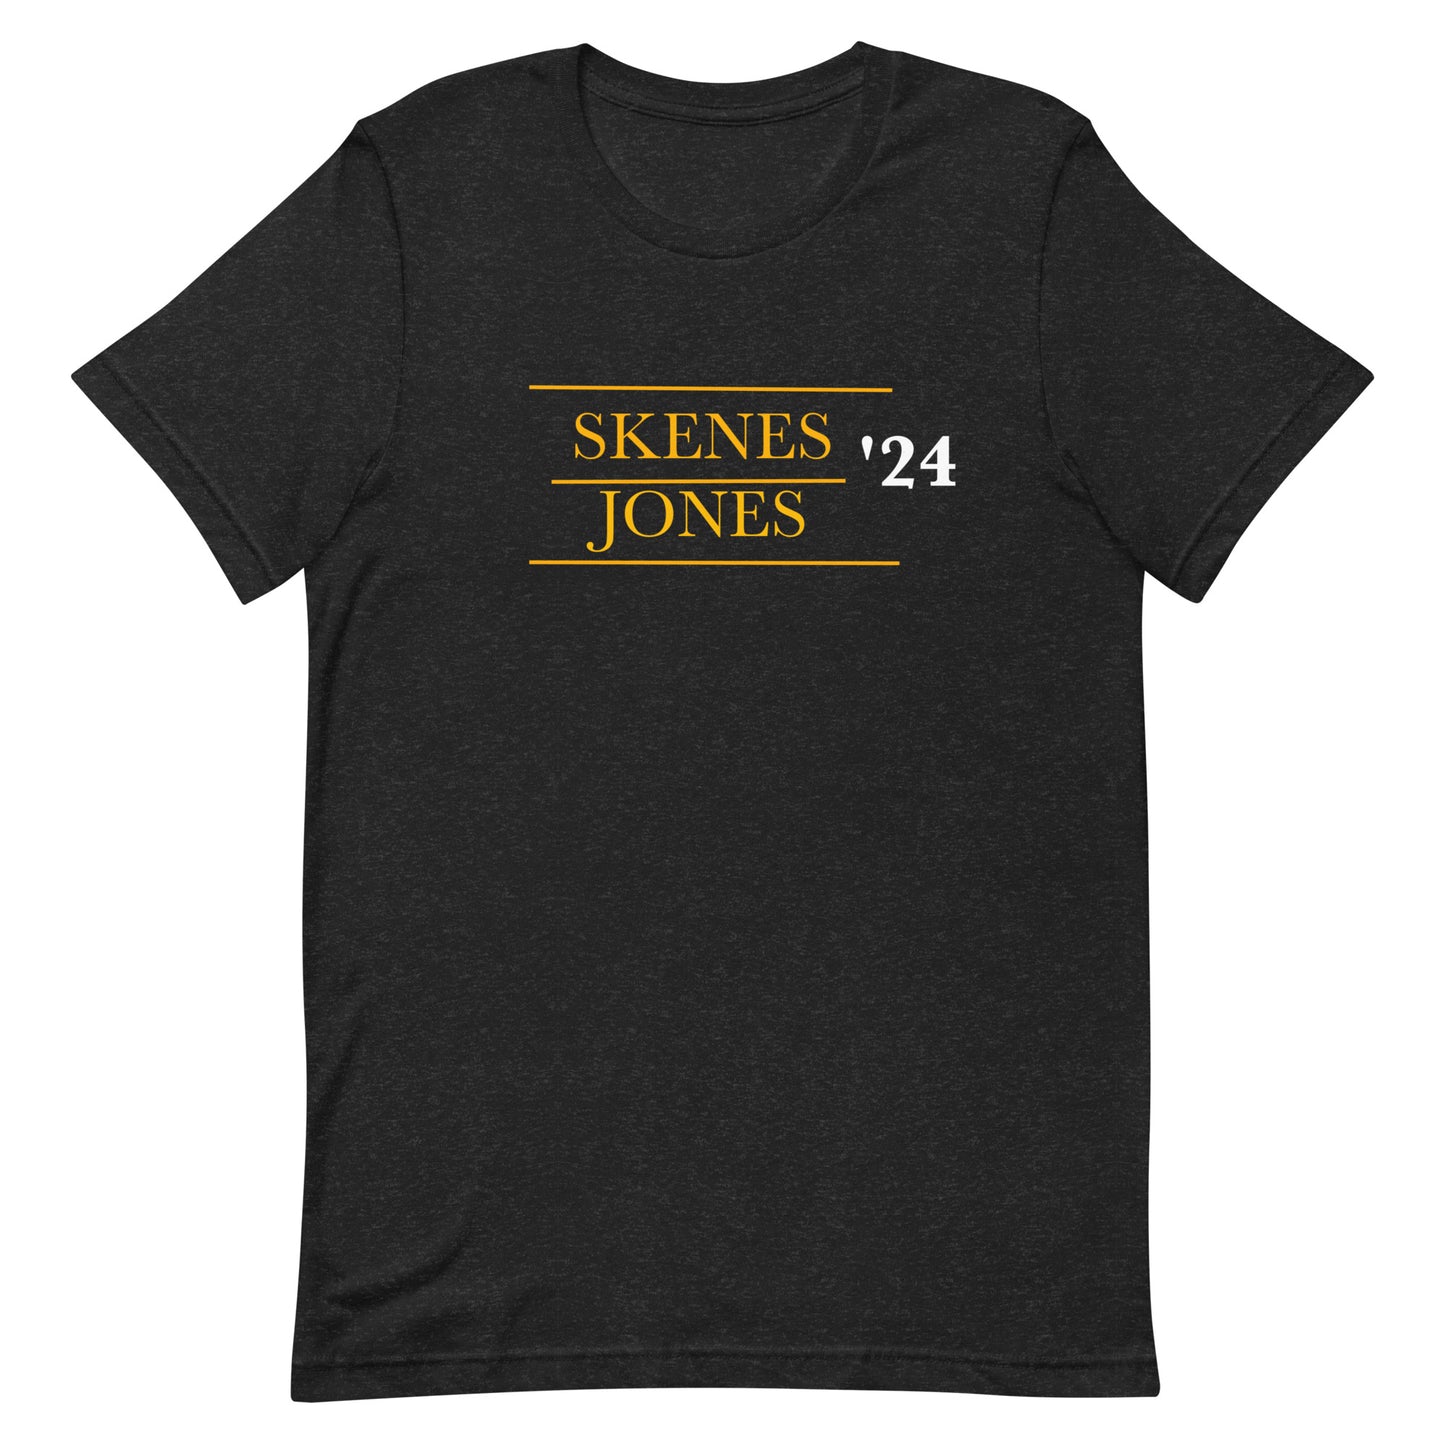 Pittsburgh Pirates Paul Skenes and Jared Jones ‘24 Presidential Shirt